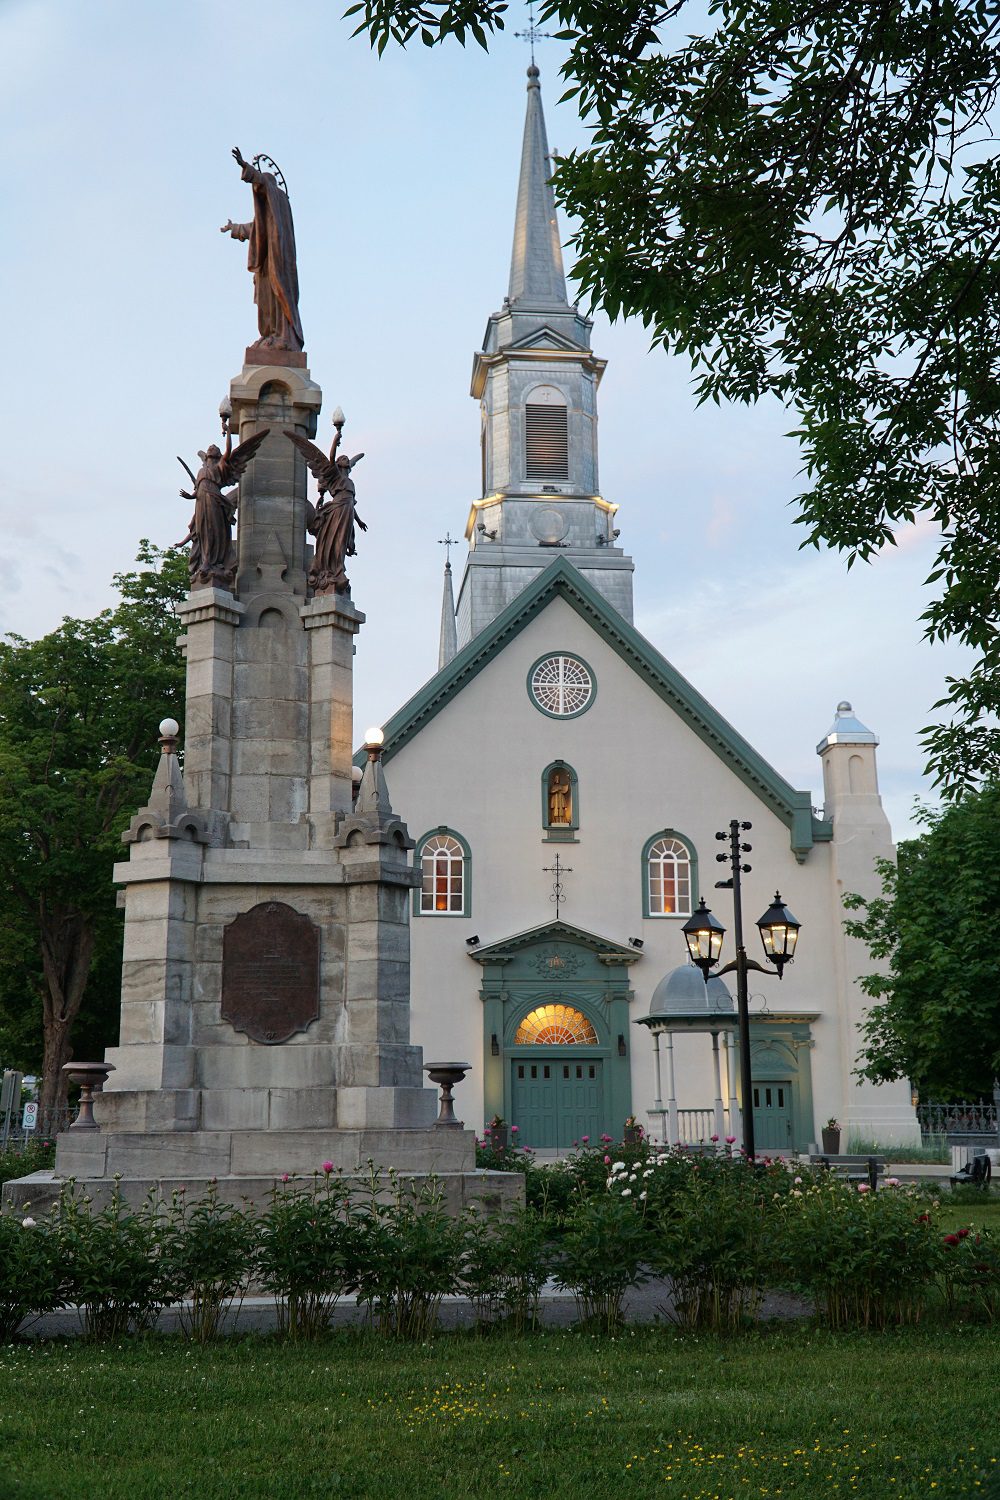 Photographie de l'Église Saint-Augustin et du Monument Sacré-Coeur en format 768 x 1152